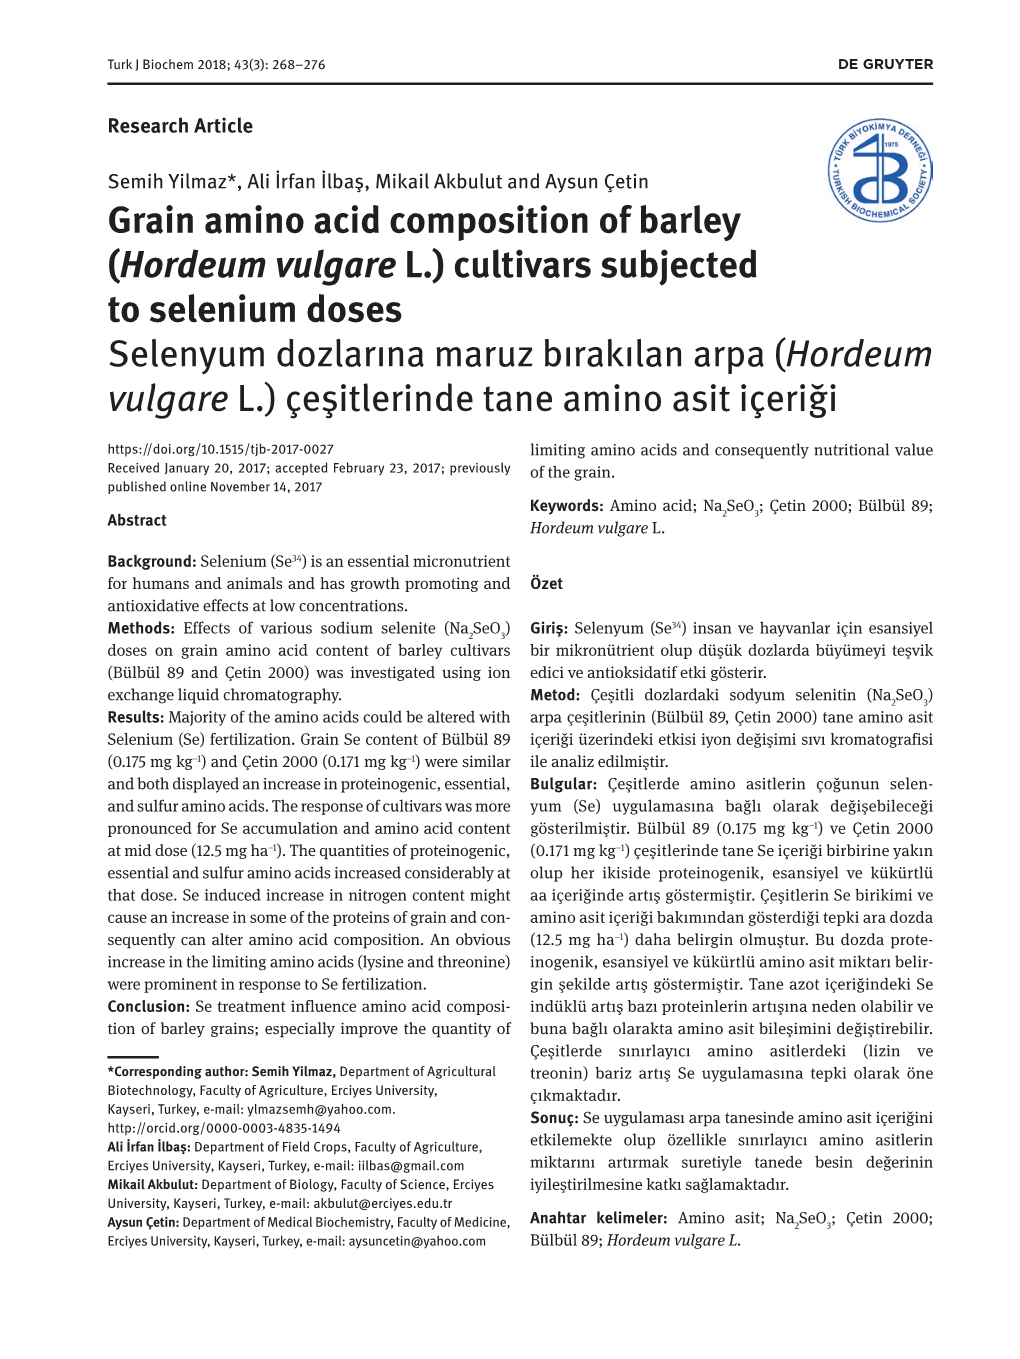 Grain Amino Acid Composition of Barley (Hordeum Vulgare